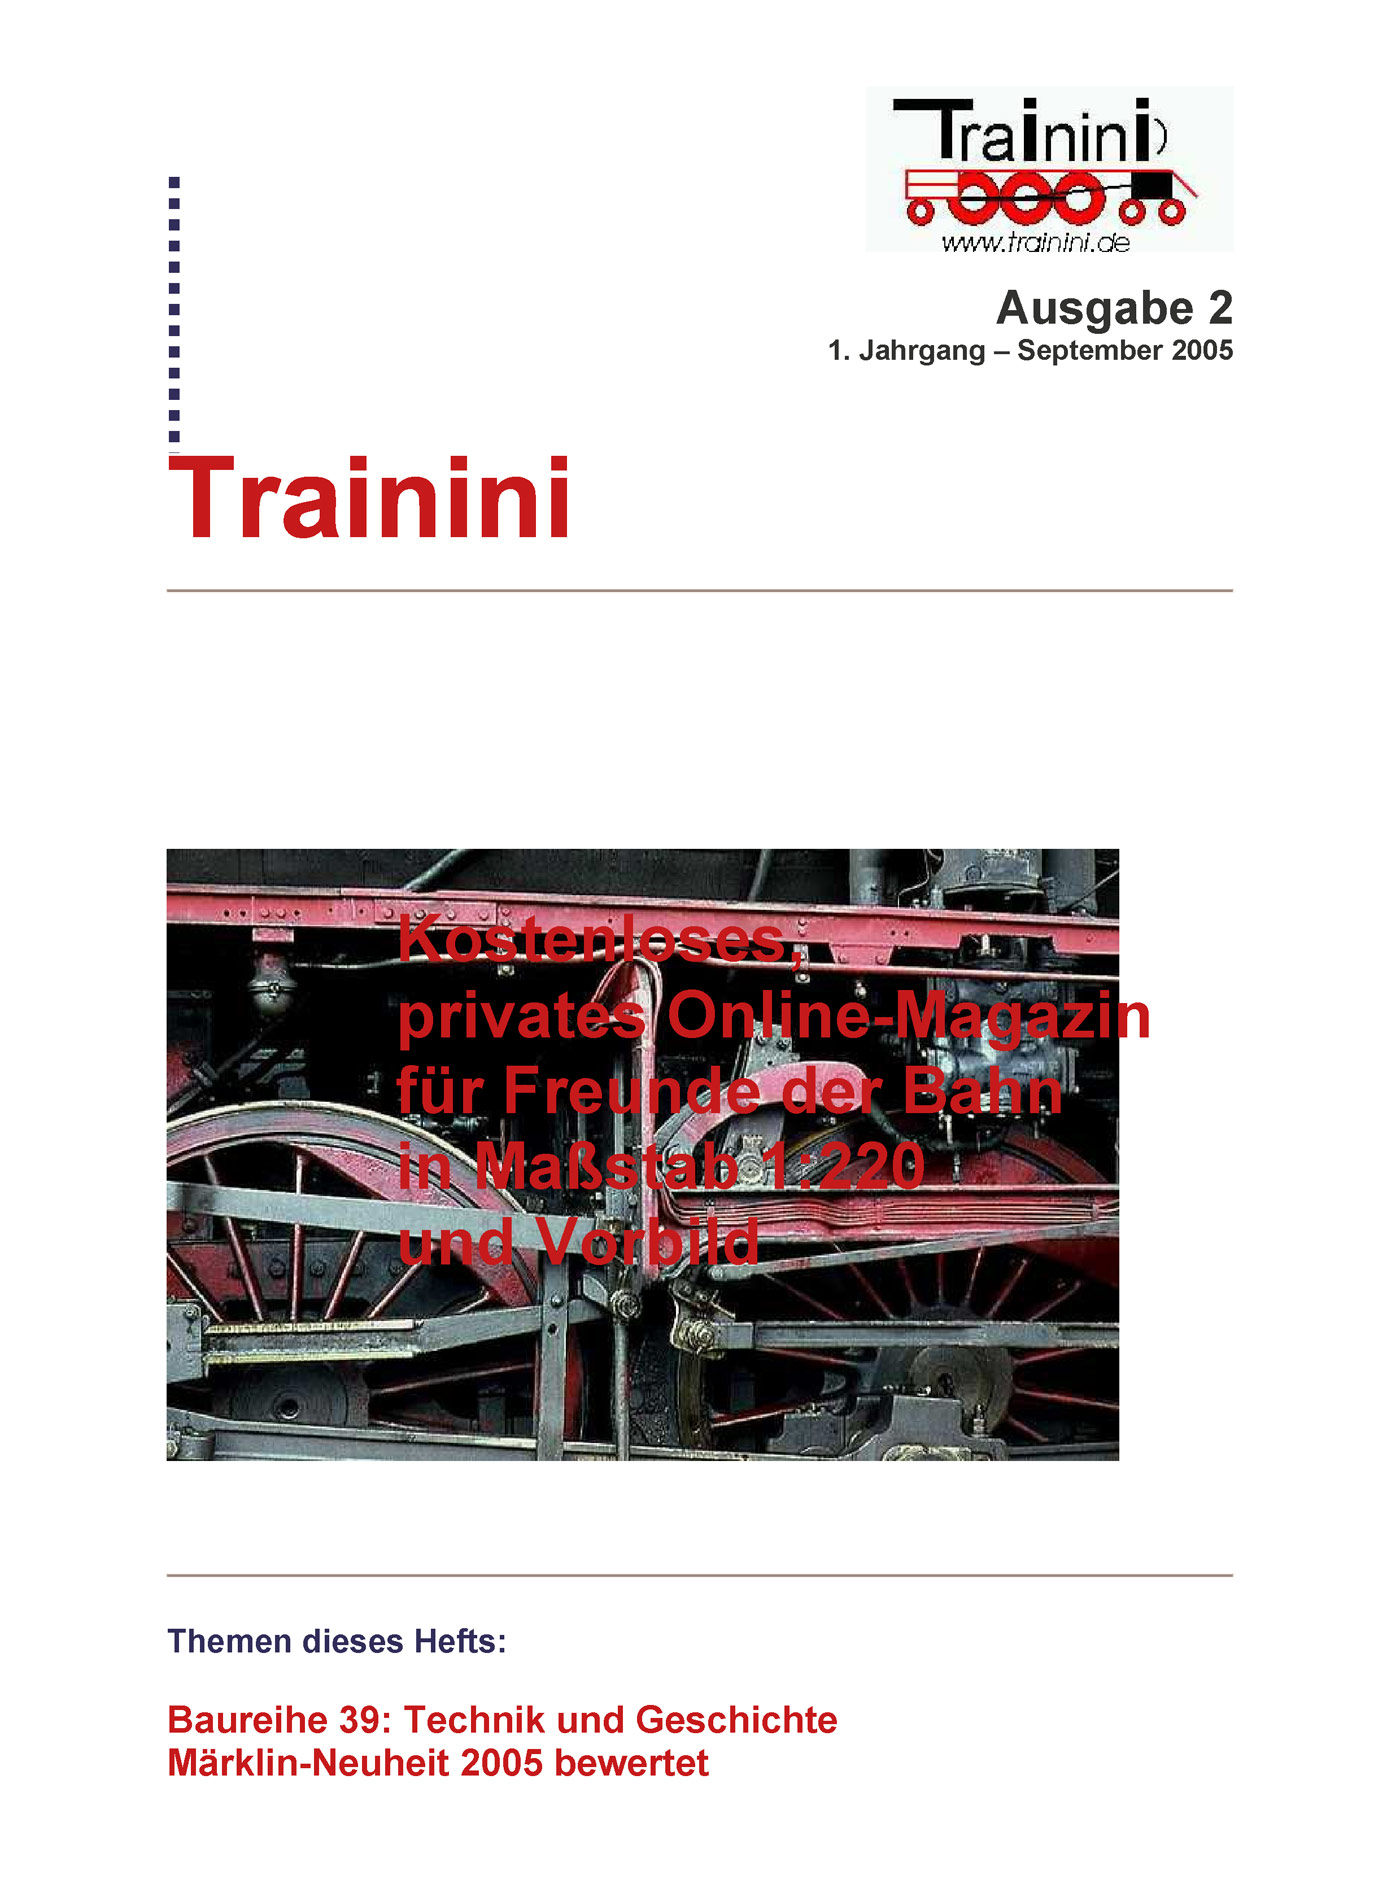 Trainini Ausgabe September 2005